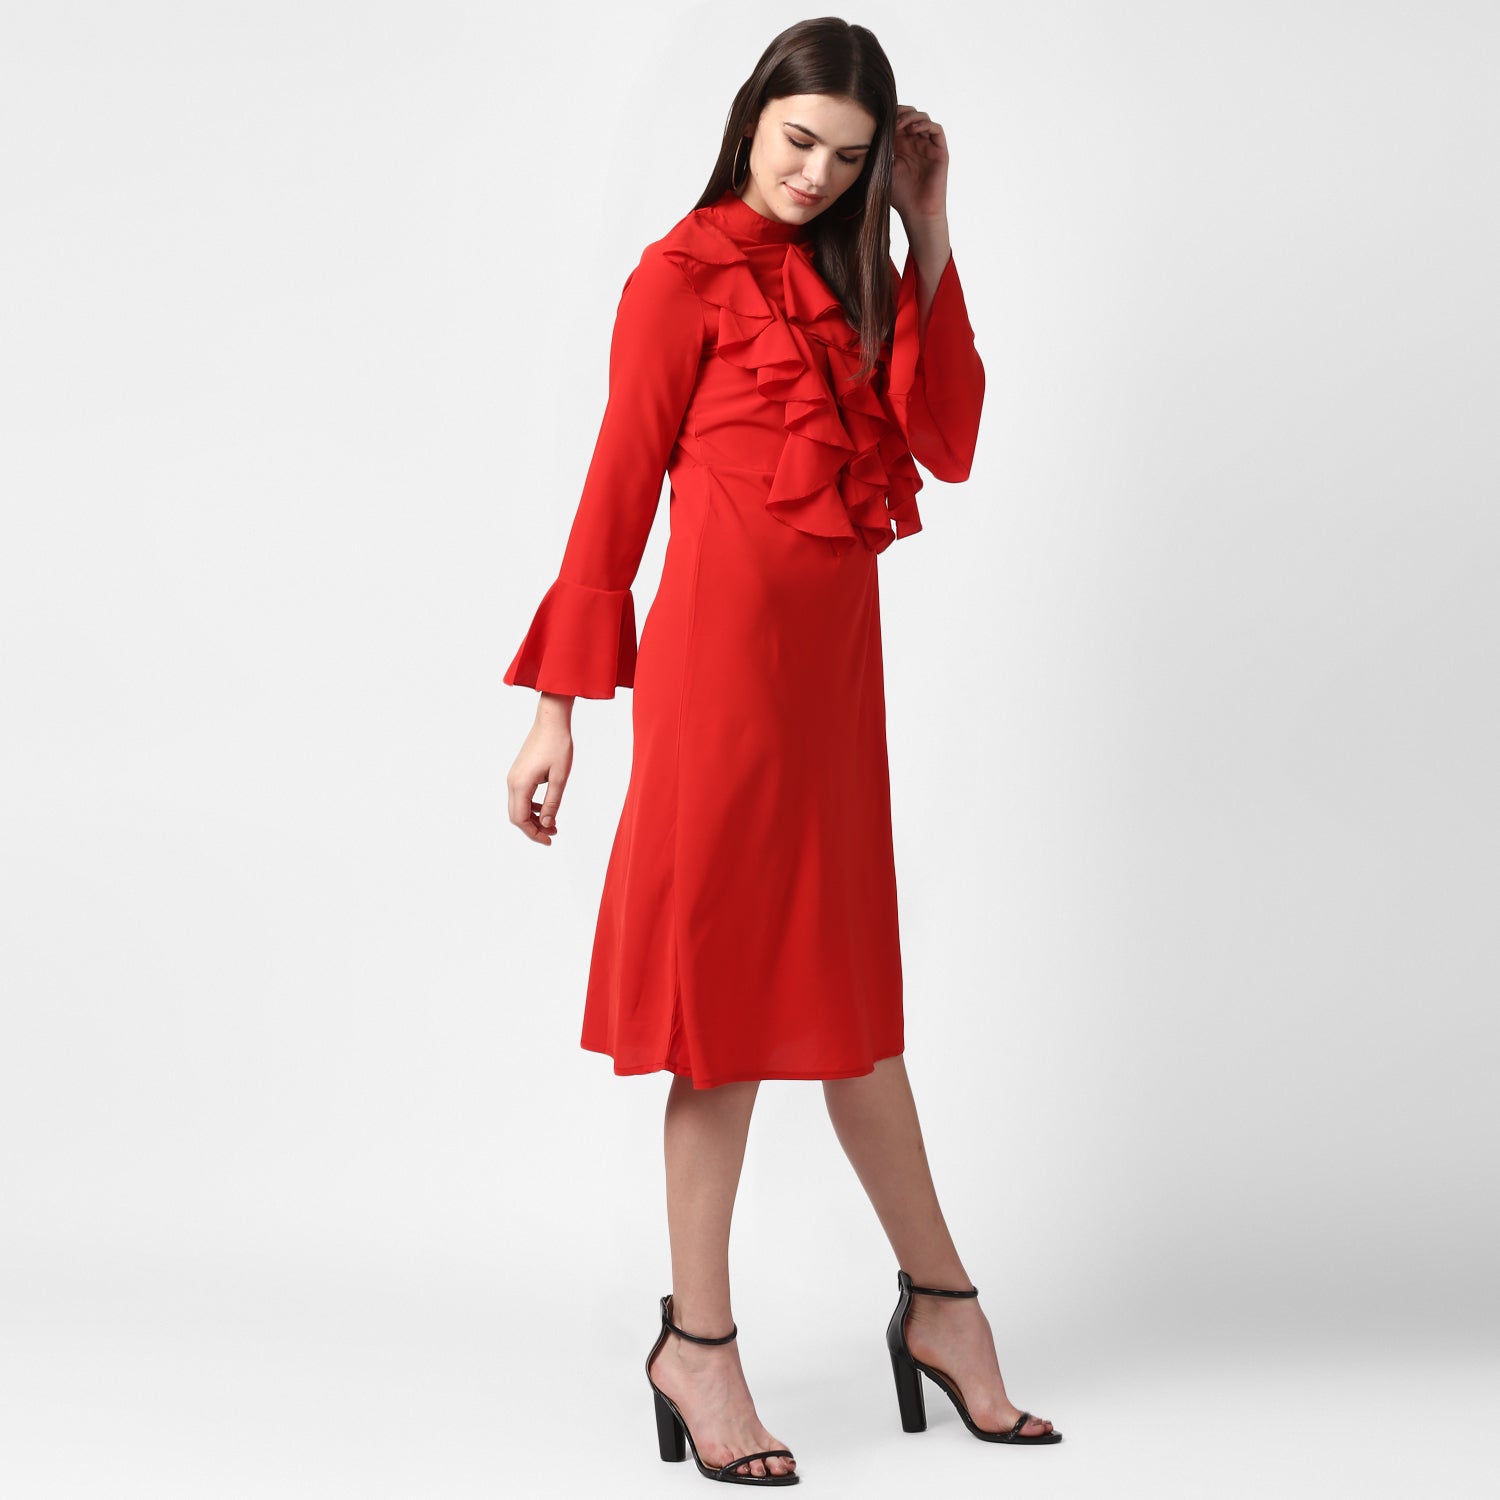 Women's Red Front Ruffle Bell Sleeve Dress - StyleStone